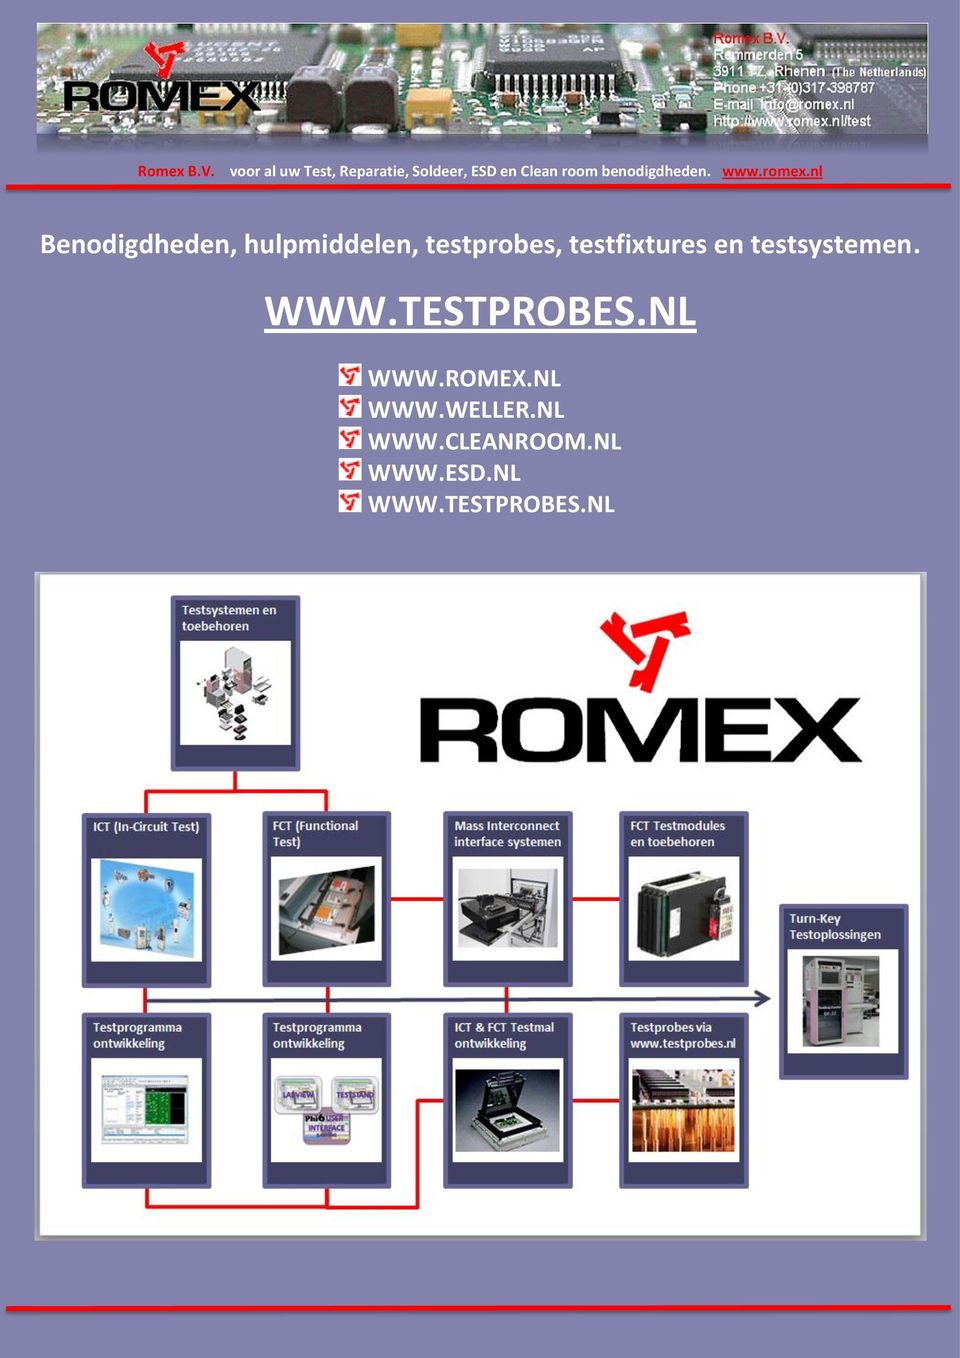 benodigdheden. www.romex.